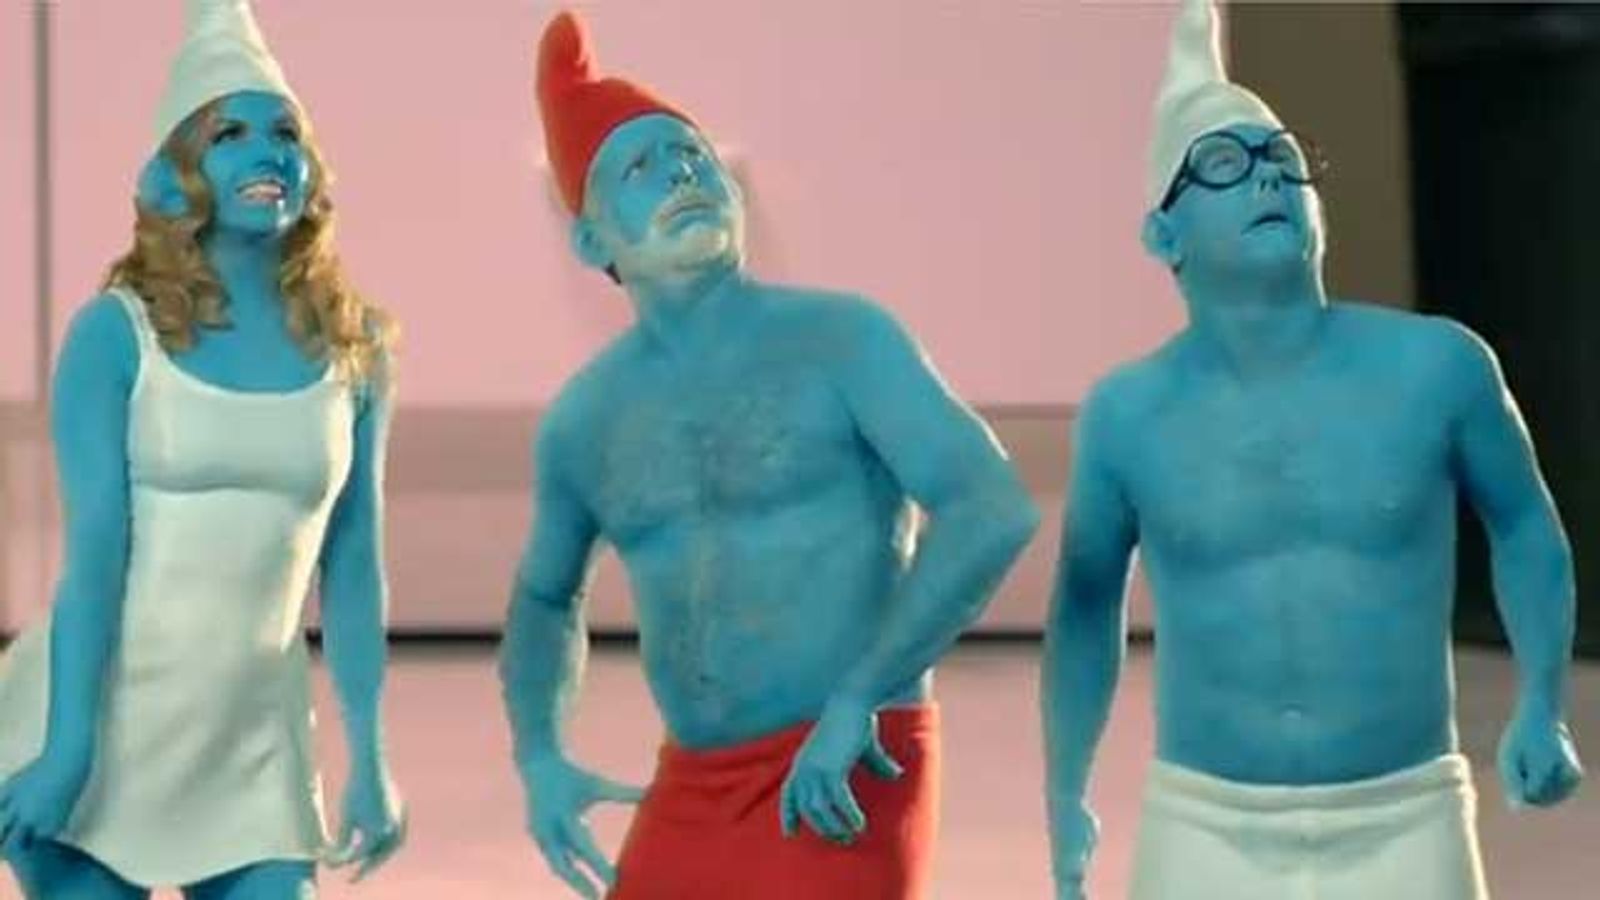 Hustler Unveils 'This Ain't The Smurfs XXX' Parody Video